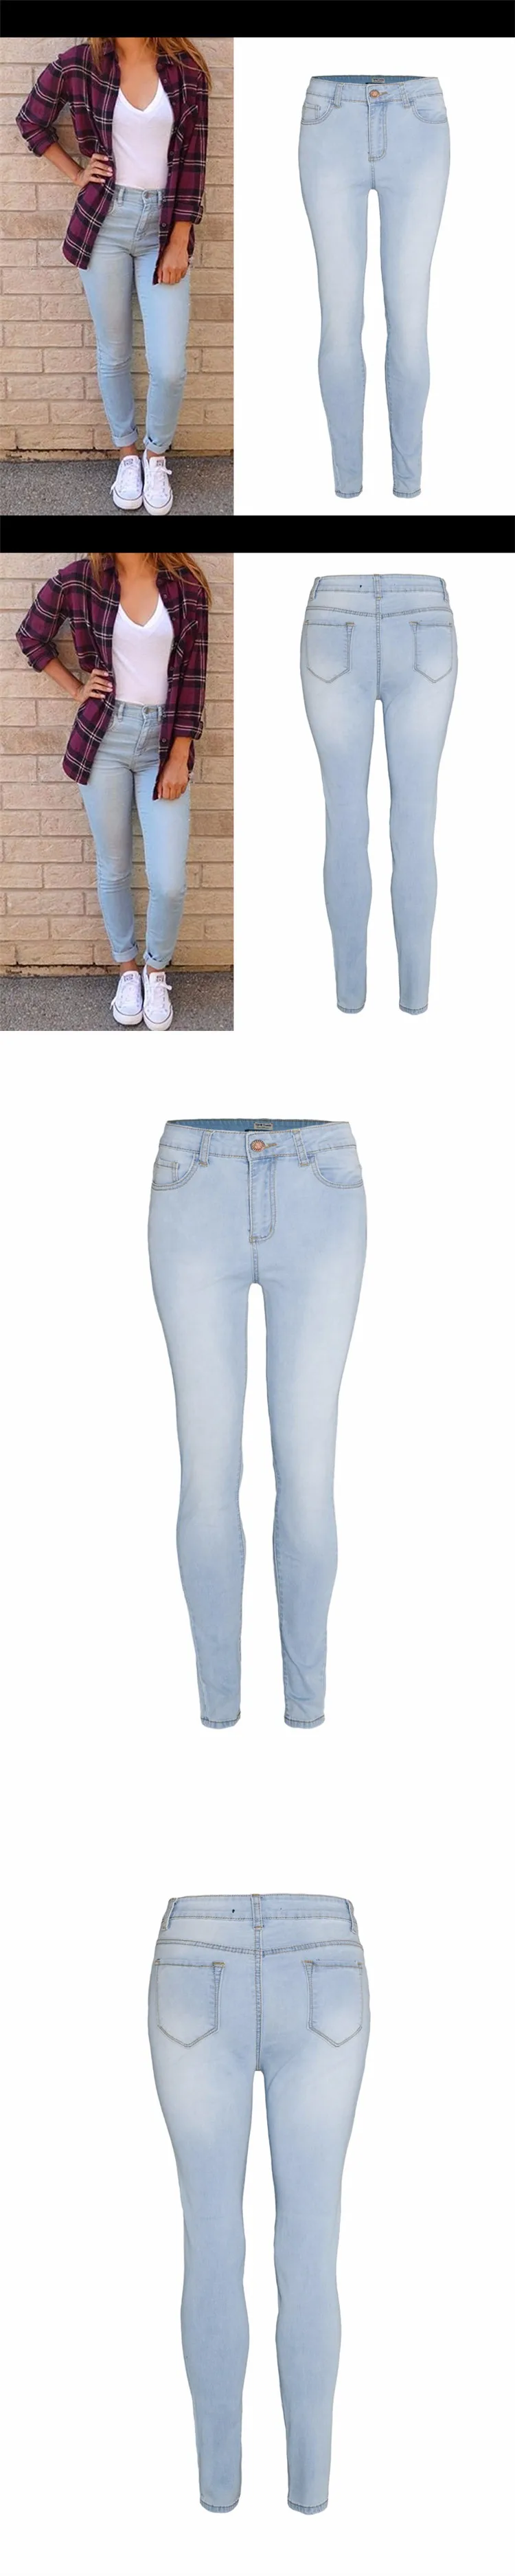 Новая мода отбеленные джинсы женщина карандаш Штаны джинсы для женщин джинсы упругие mujer femme узкие джинсовые брюки с высокой талией